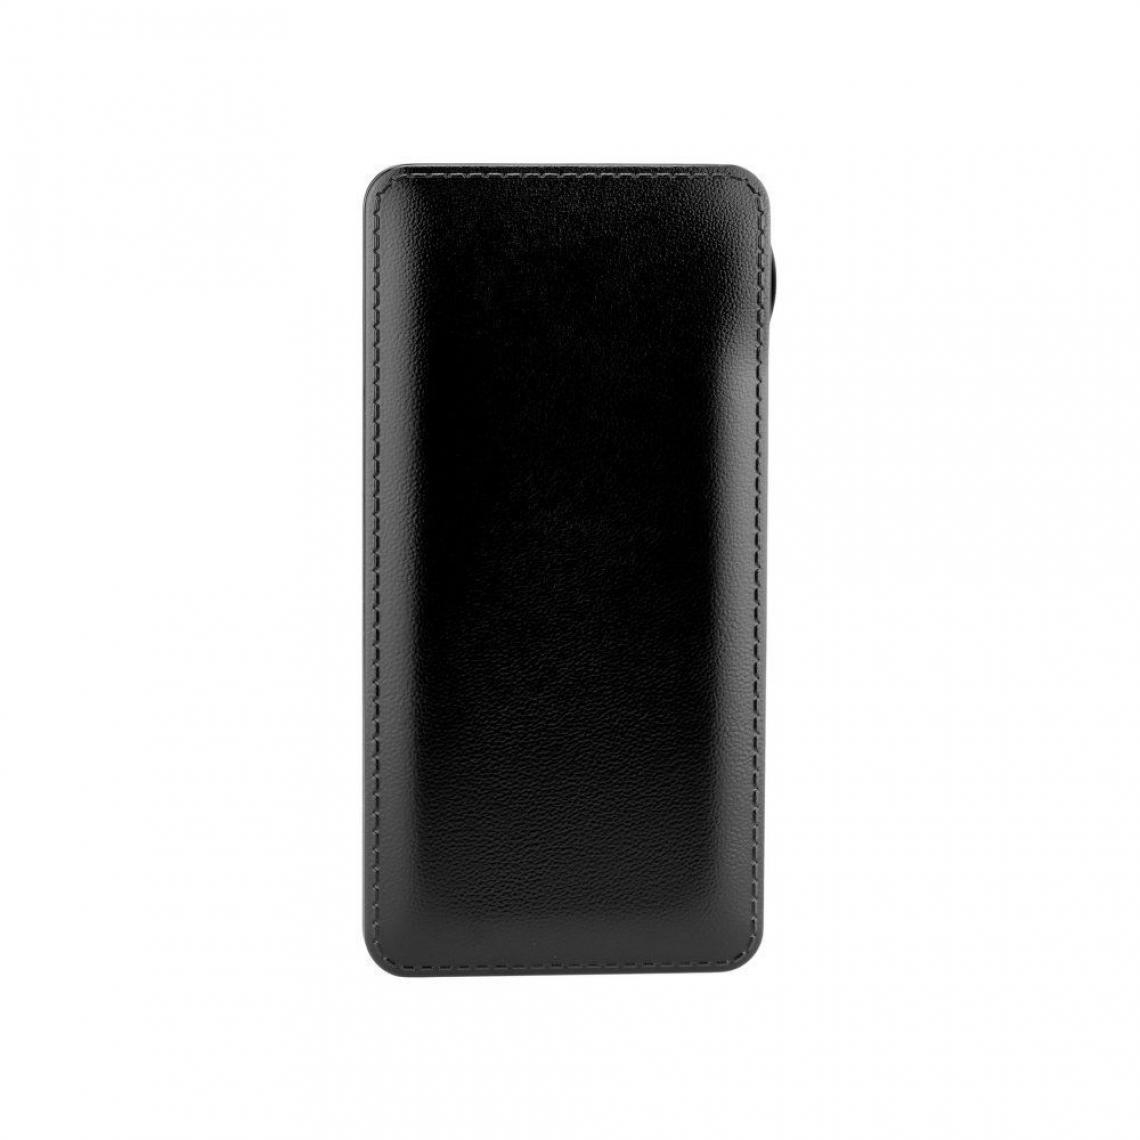 Ozzzo - Chargeur batterie externe 20000 mAh powerbank ozzzo noir pour Logicom M bot tab 101 Pack Gaming - Autres accessoires smartphone